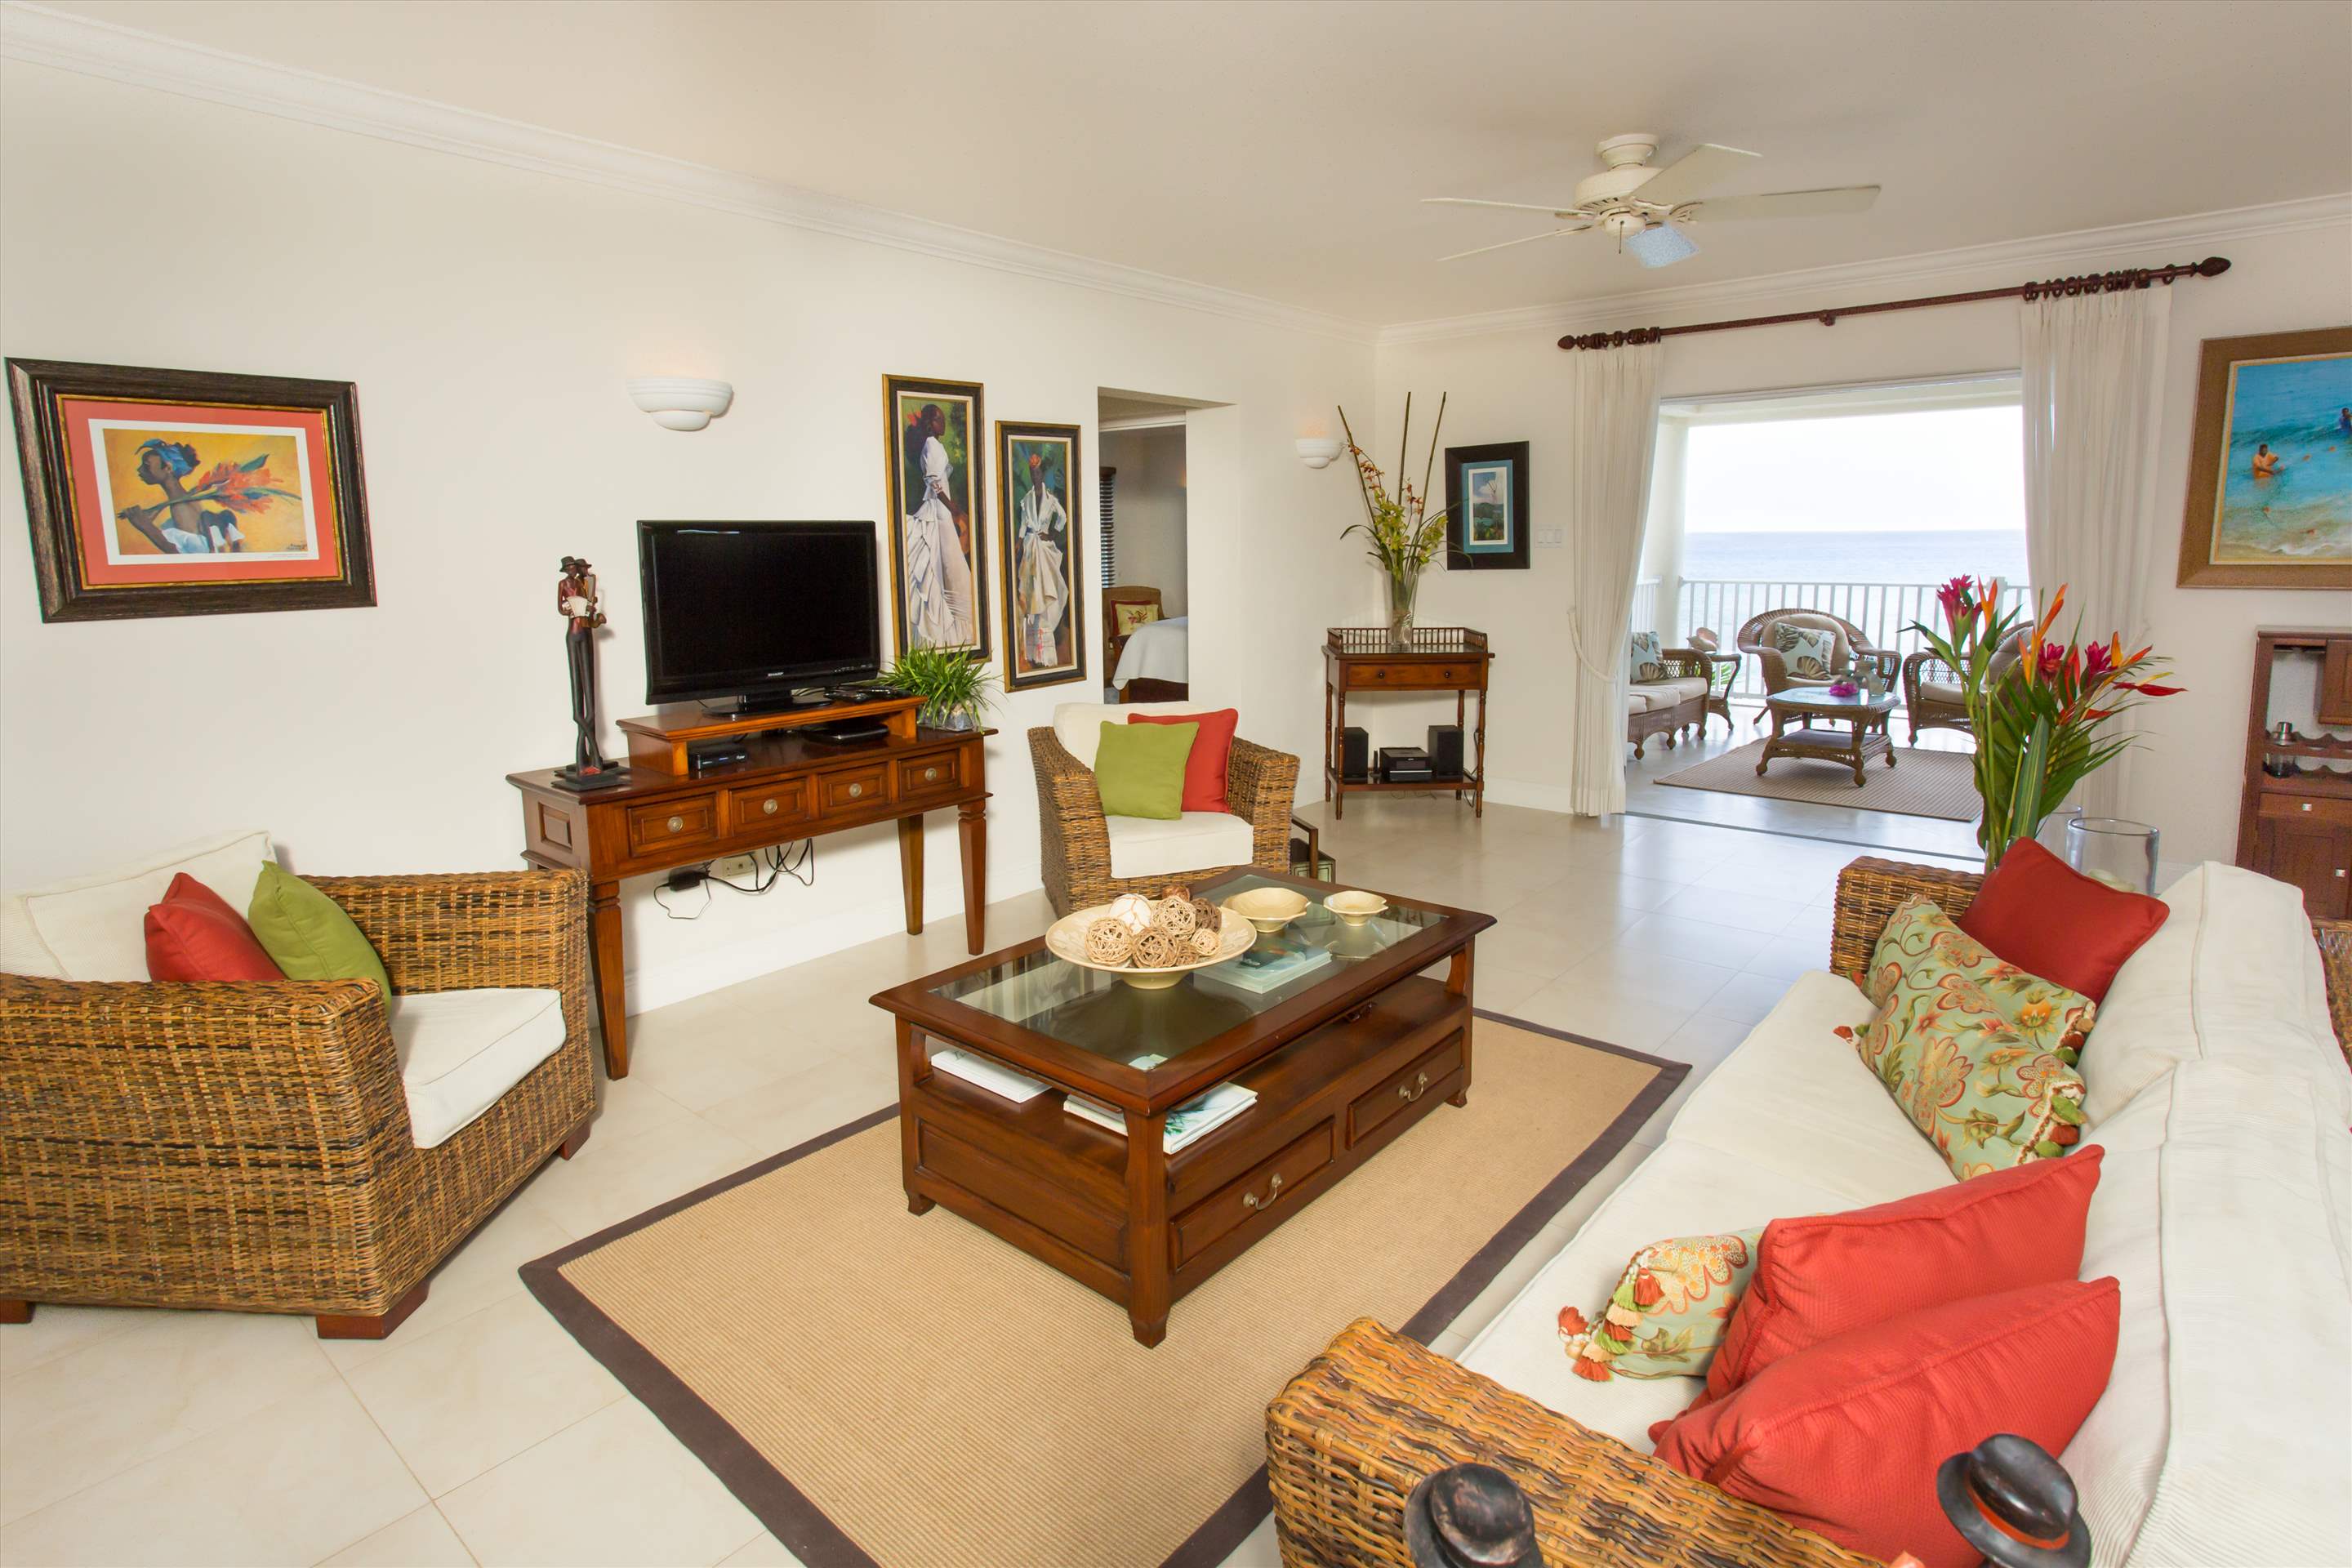 Sandy Hook 21, 3 bedroom, 3 bedroom villa in St. Lawrence Gap & South Coast, Barbados Photo #5